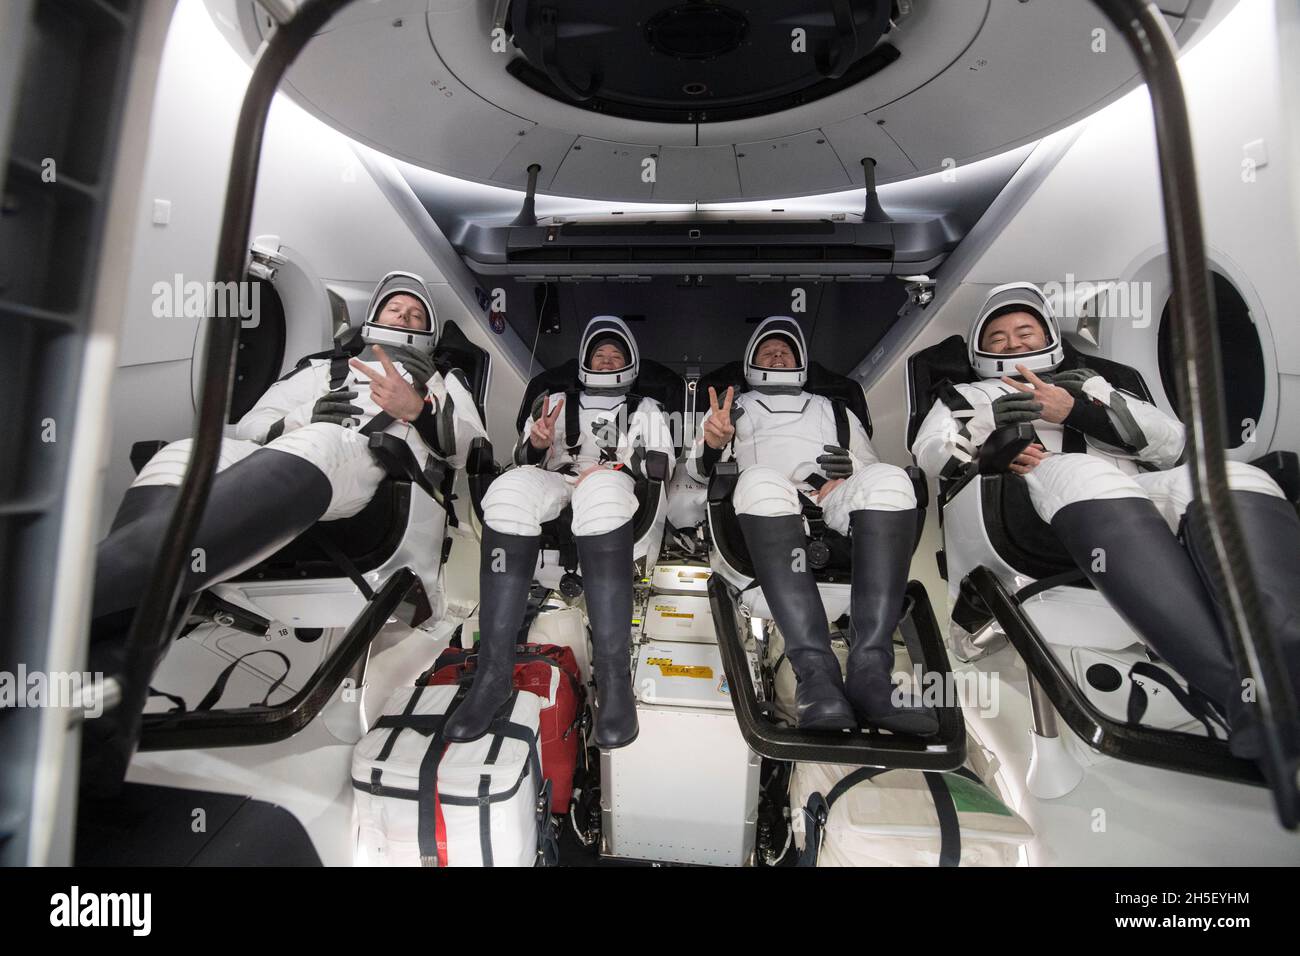 Thomas Pesquet, astronauta de la ESA (Agencia Espacial Europea), izquierda, Megan McArthur, astronautas de la NASA y Shane Kimbrough, Y el astronauta de la Agencia de Exploración Aeroespacial de Japón (JAXA) Aki Hoshide, a la derecha, se ven dentro de la nave espacial SpaceX Crew Dragon Endeavour a bordo del barco de recuperación SpaceX GO Navigator poco después de haber aterrizado en el Golfo de México frente a la costa de Pensacola, Florida, el lunes 8 de noviembre de 2021. La misión SpaceX Crew-2 de la NASA es la segunda misión operacional de la nave espacial SpaceX Crew Dragon y el cohete Falcon 9 a la Estación Espacial Internacional como parte de la banda Commercial Crew PR de la agencia Foto de stock